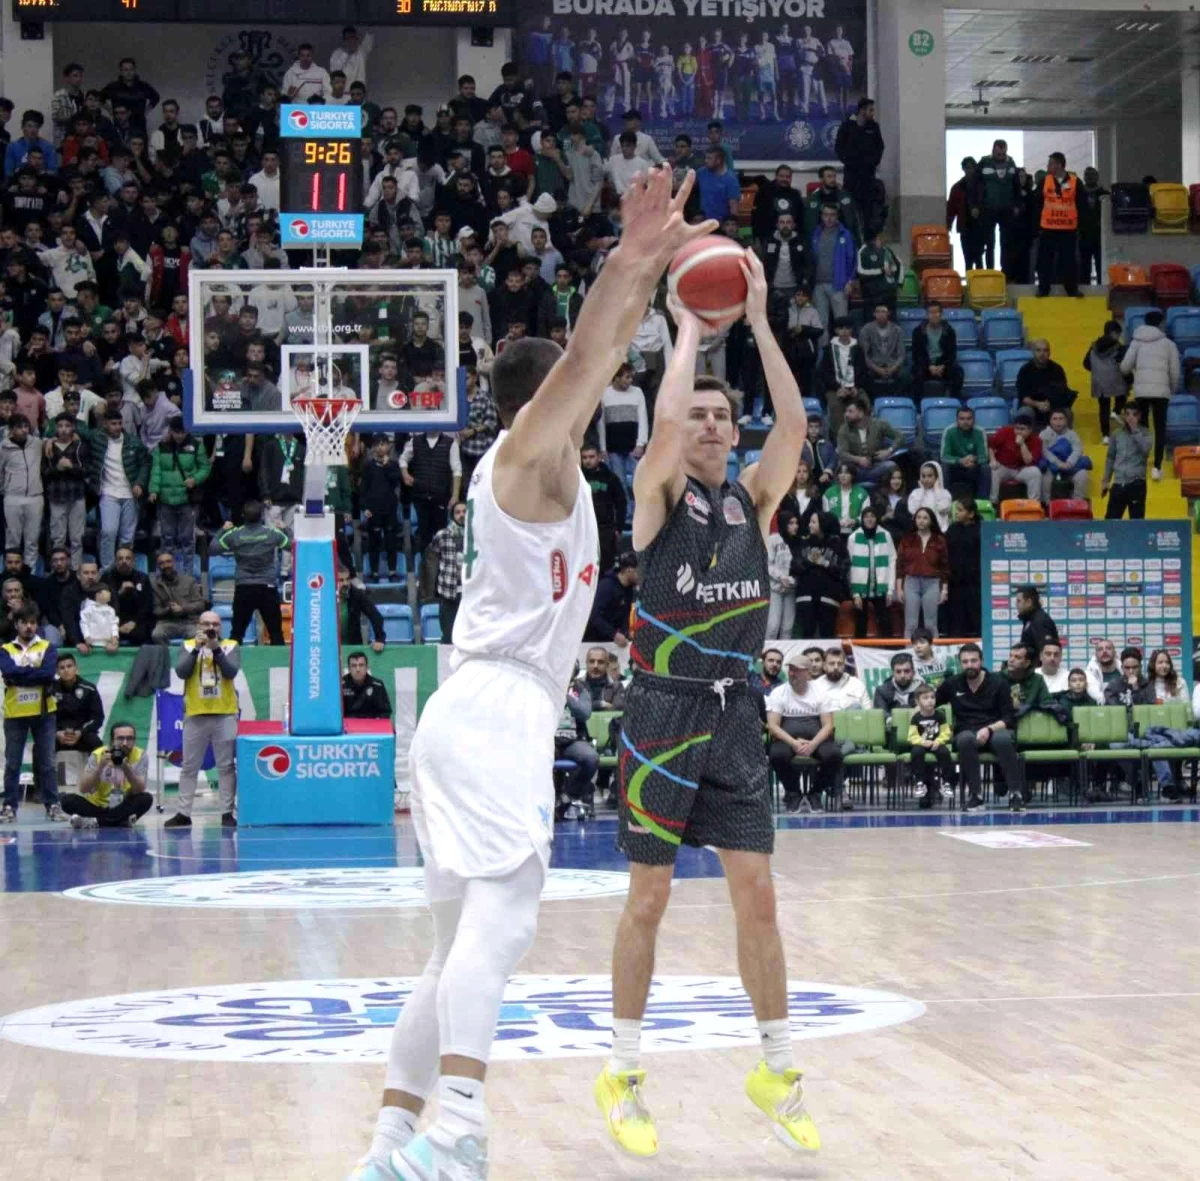 Basketbol Süper Ligi: Konyaspor: 89 Aliağa Petkimspor: 84